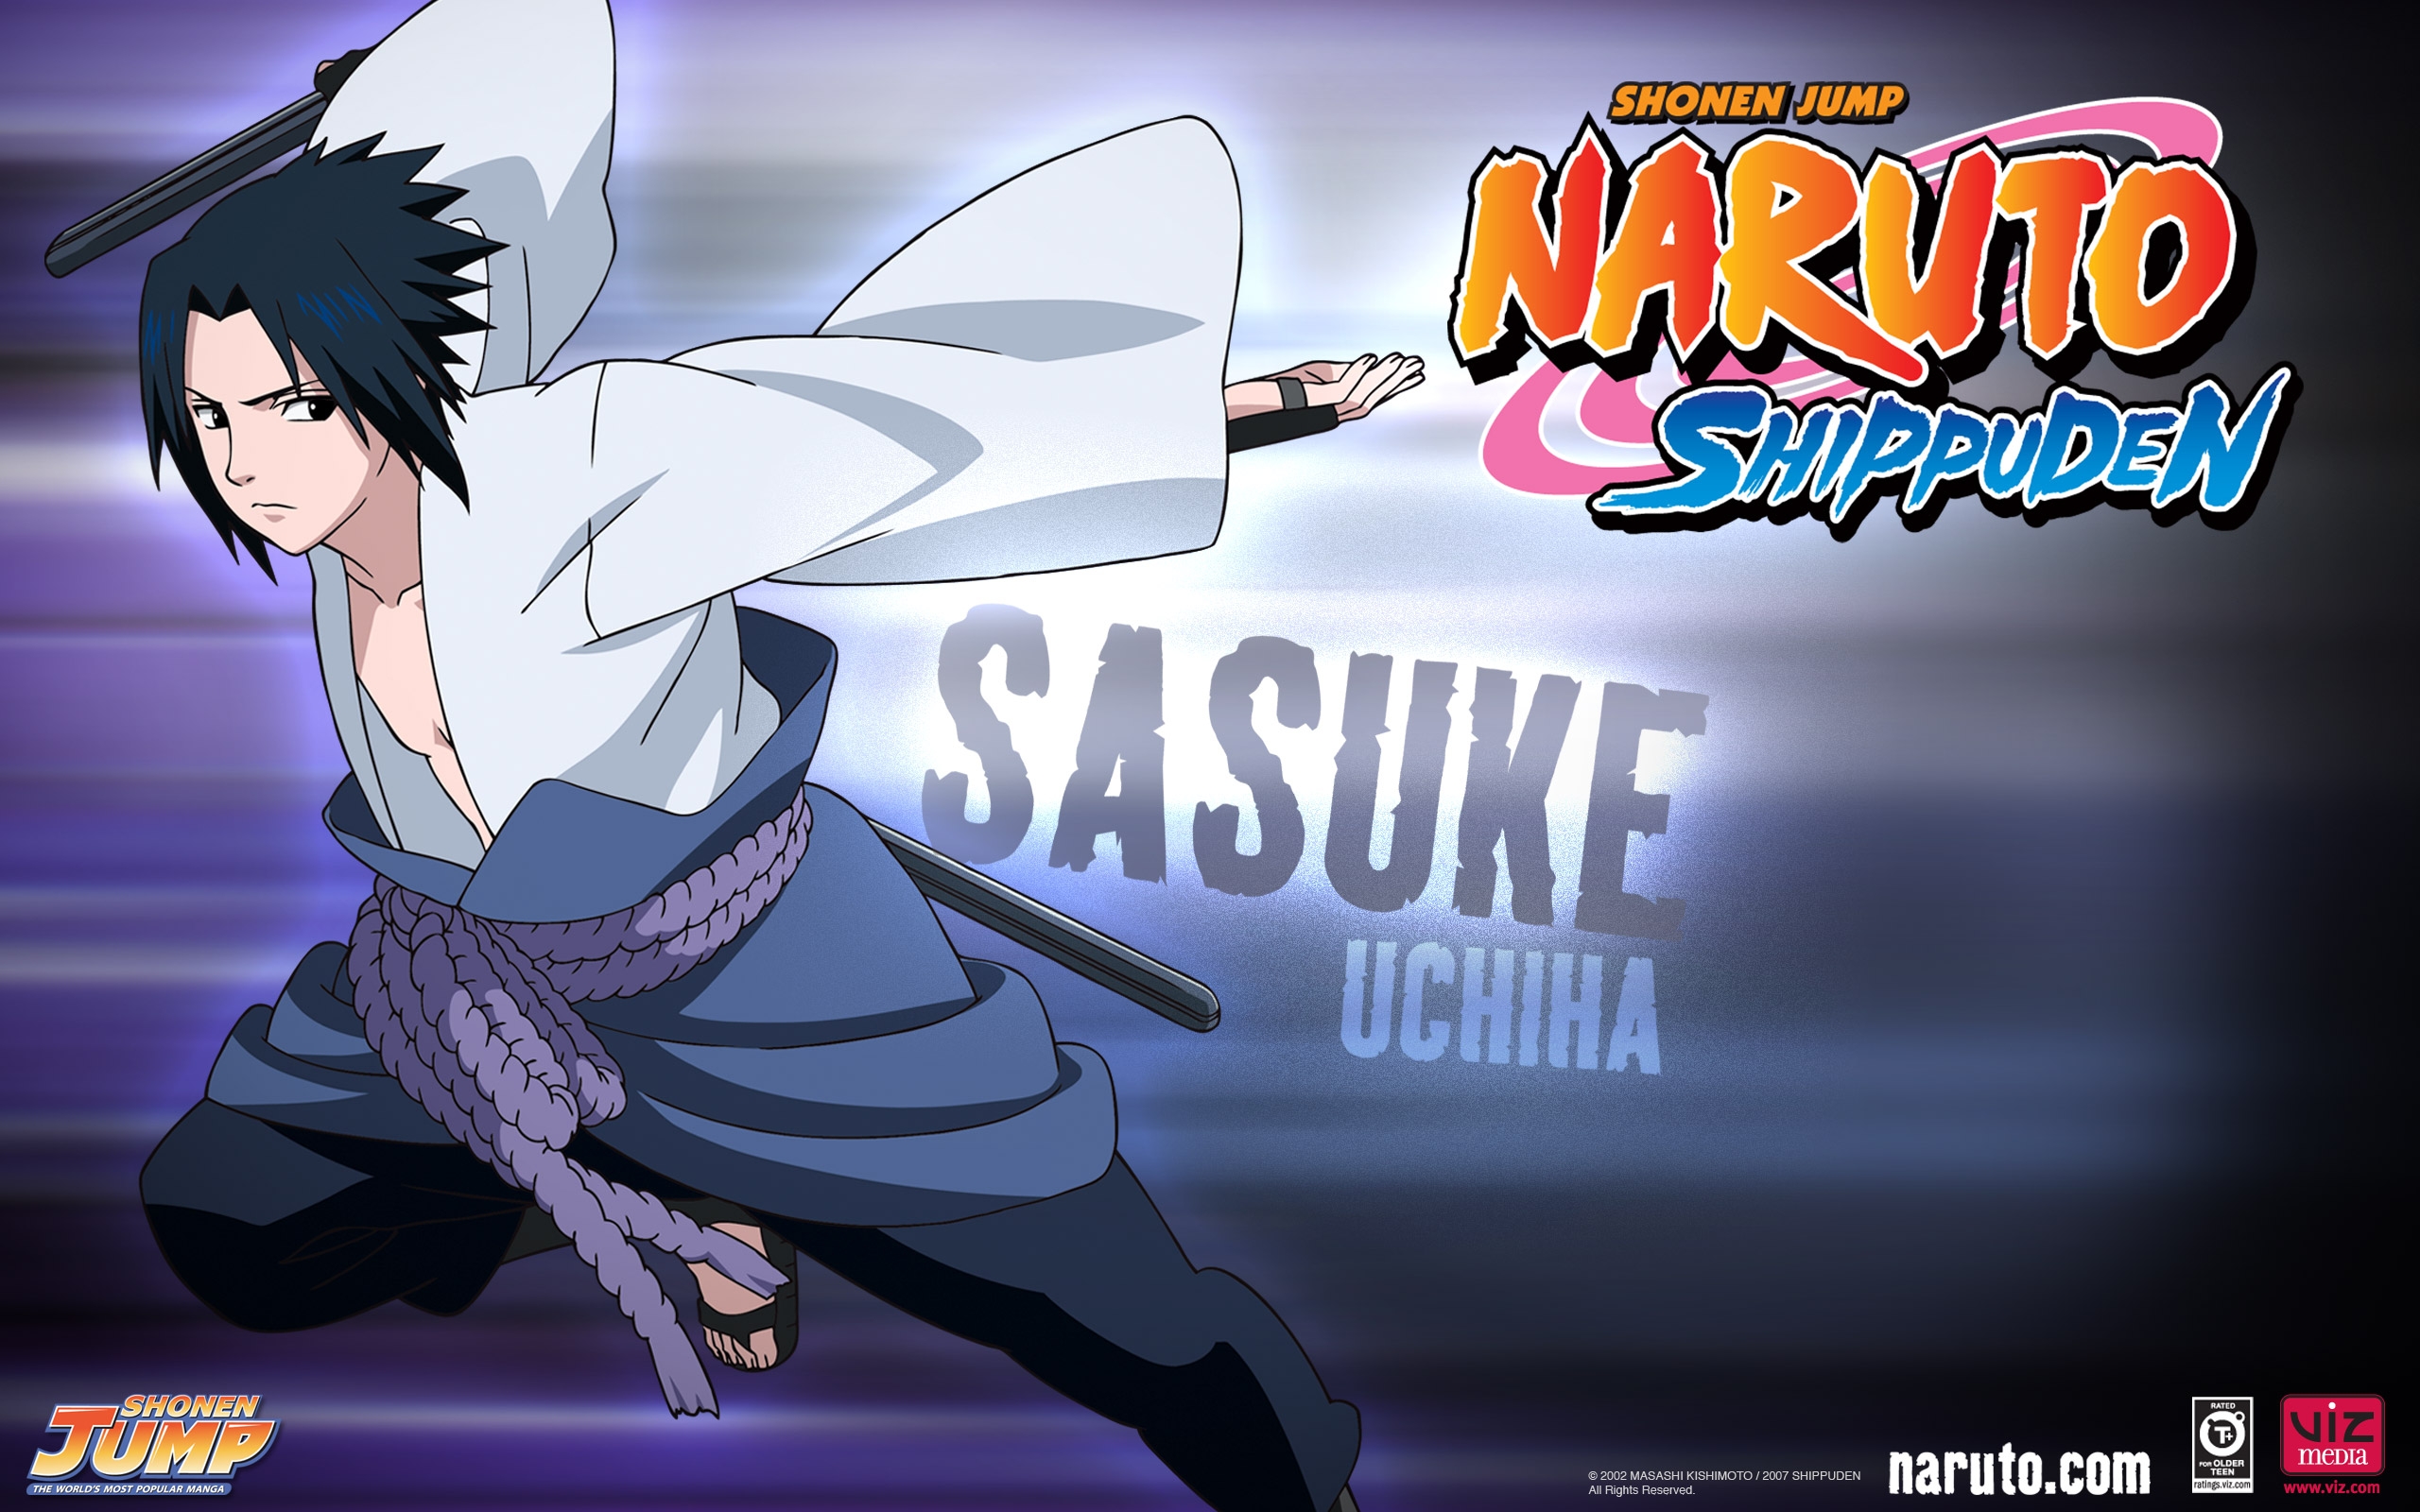 Naruto_Shippuden_Sasuke, Naruto, Shippuden, Sasuke